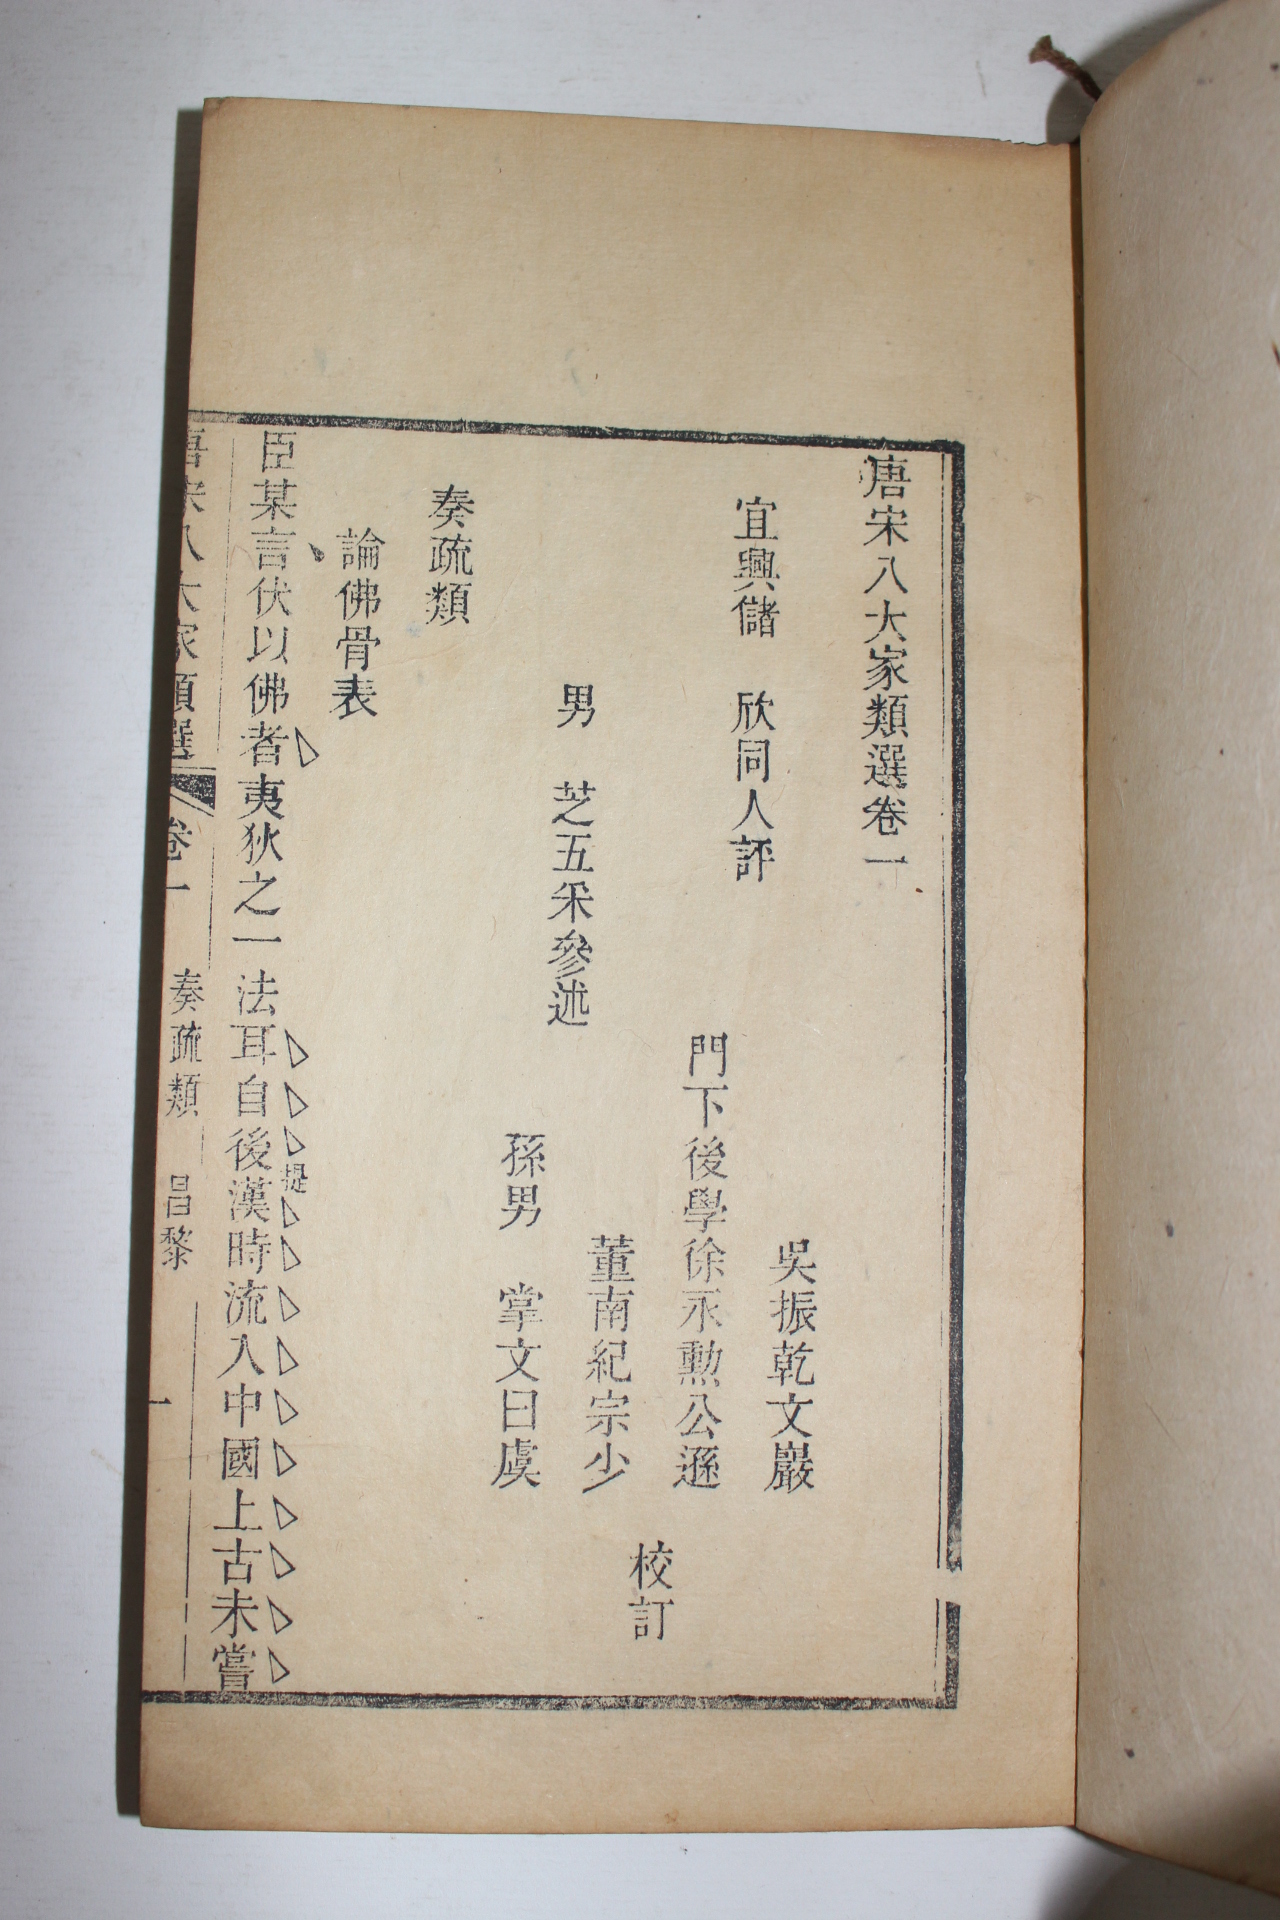 1912년(民國元年) 중국목판본 당송팔대가류선(唐宋八大家類選) 14책